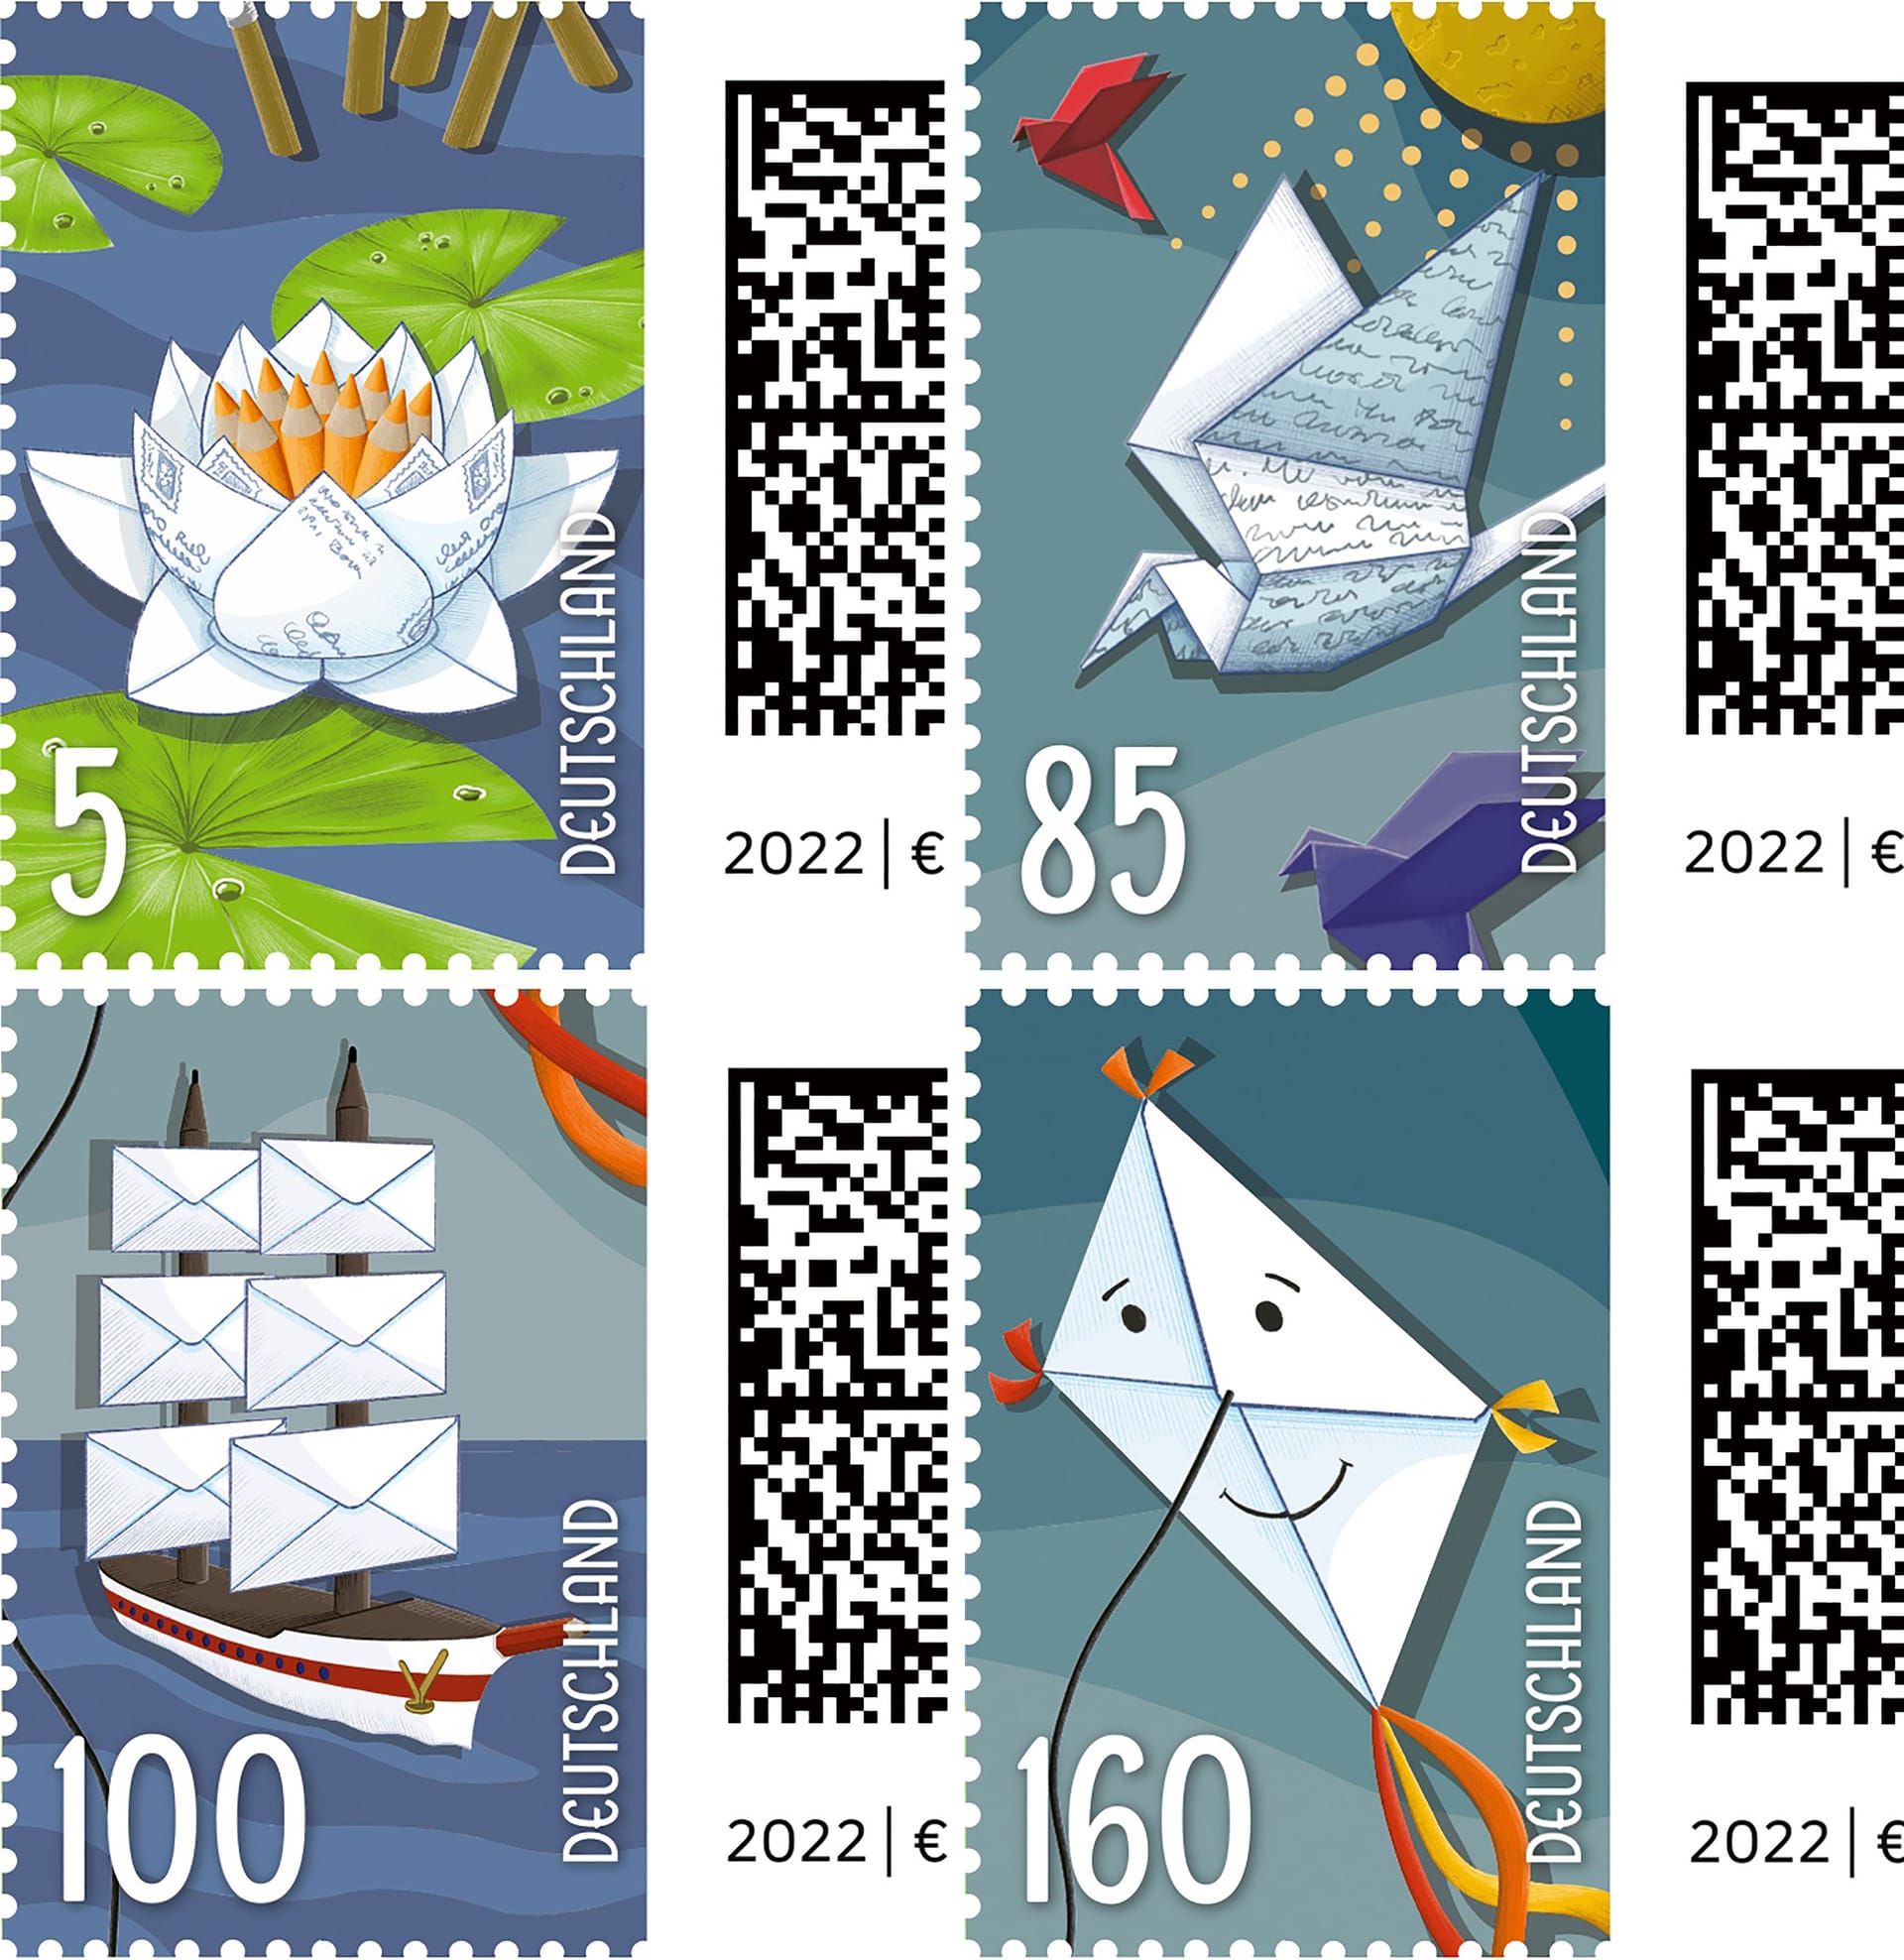 Postwertzeichen: Auf den neuen Briefmarken der Deutschen Post sind ein Papierdrache, eine Papierrose, eine Brieftaube oder ein Segelschiff abgebildet.